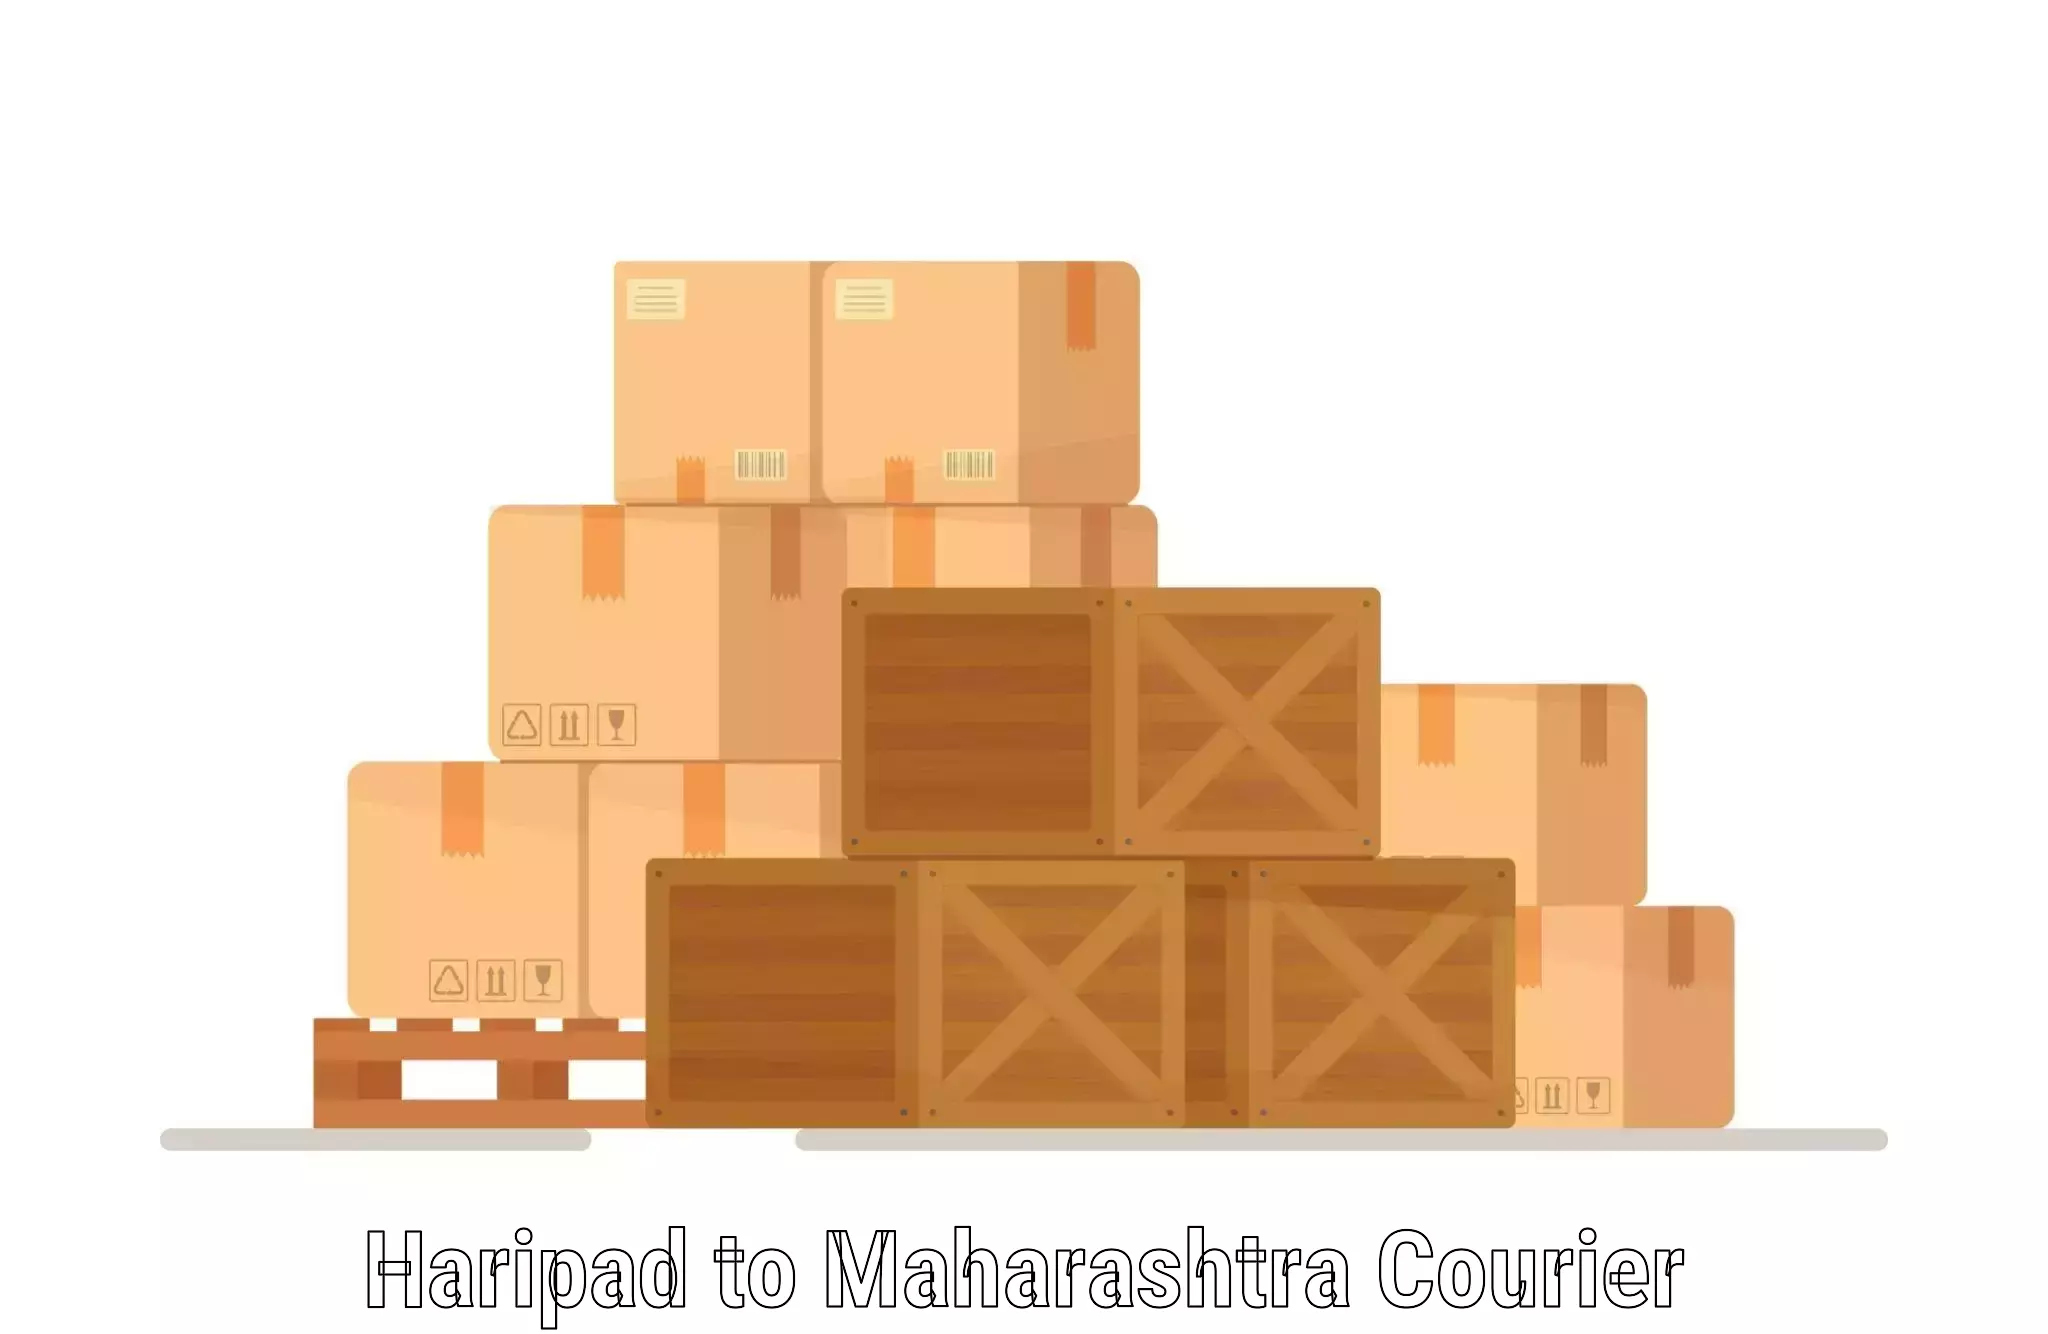 Subscription-based courier Haripad to Maharashtra